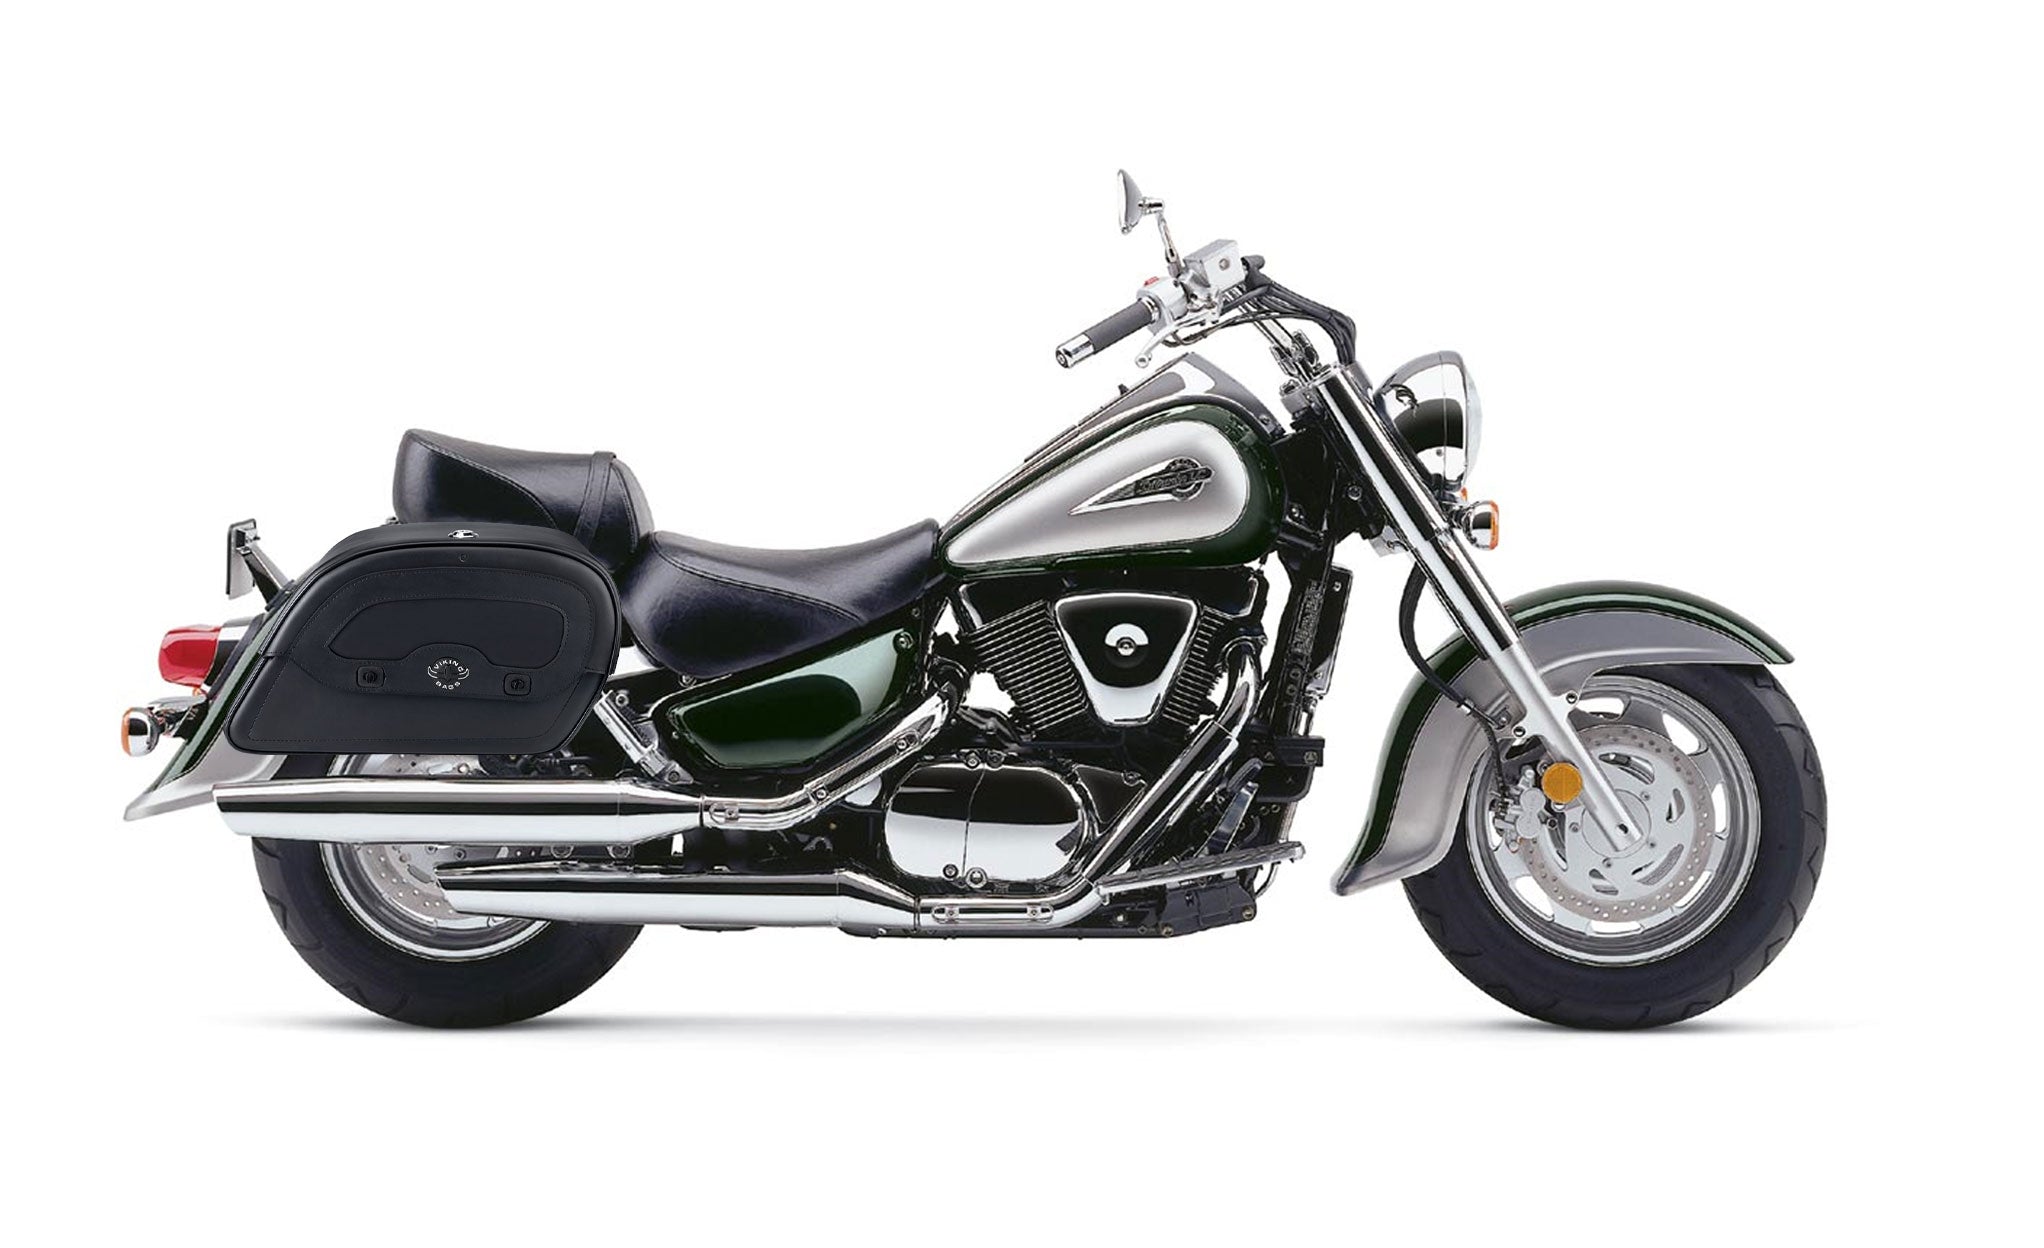 Viking Warrior Large Suzuki Intruder 1500 Vl1500 Leather Motorcycle Saddlebags on Bike Photo @expand